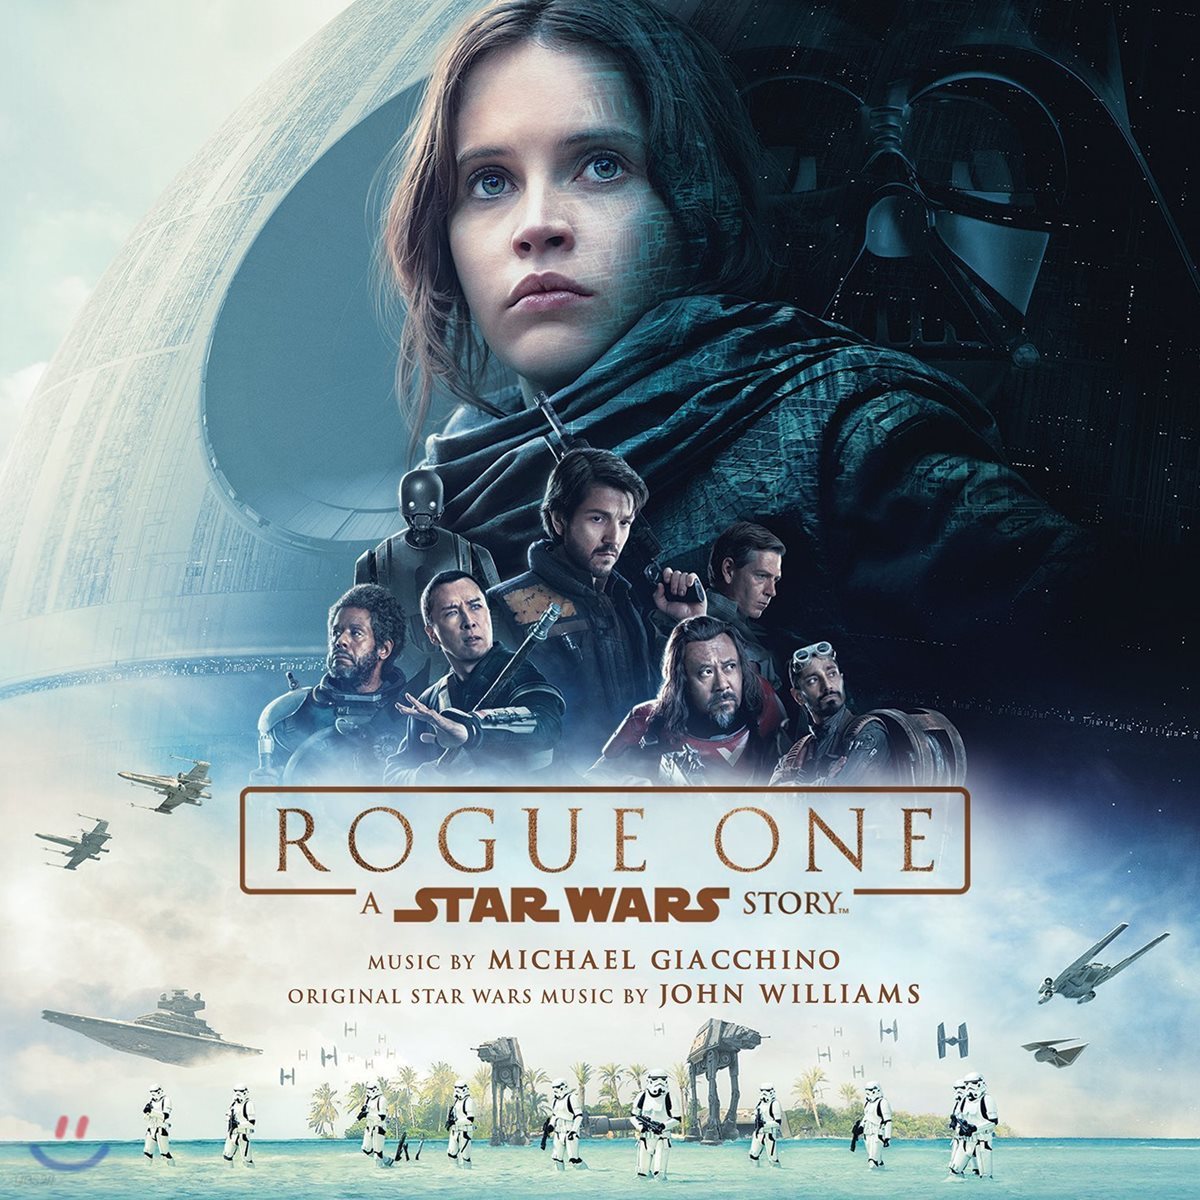 로그 원 - 스타워즈 스토리 영화음악 (Rogue One: A Star Wars Story OST by Michael Giacchino) [2LP]